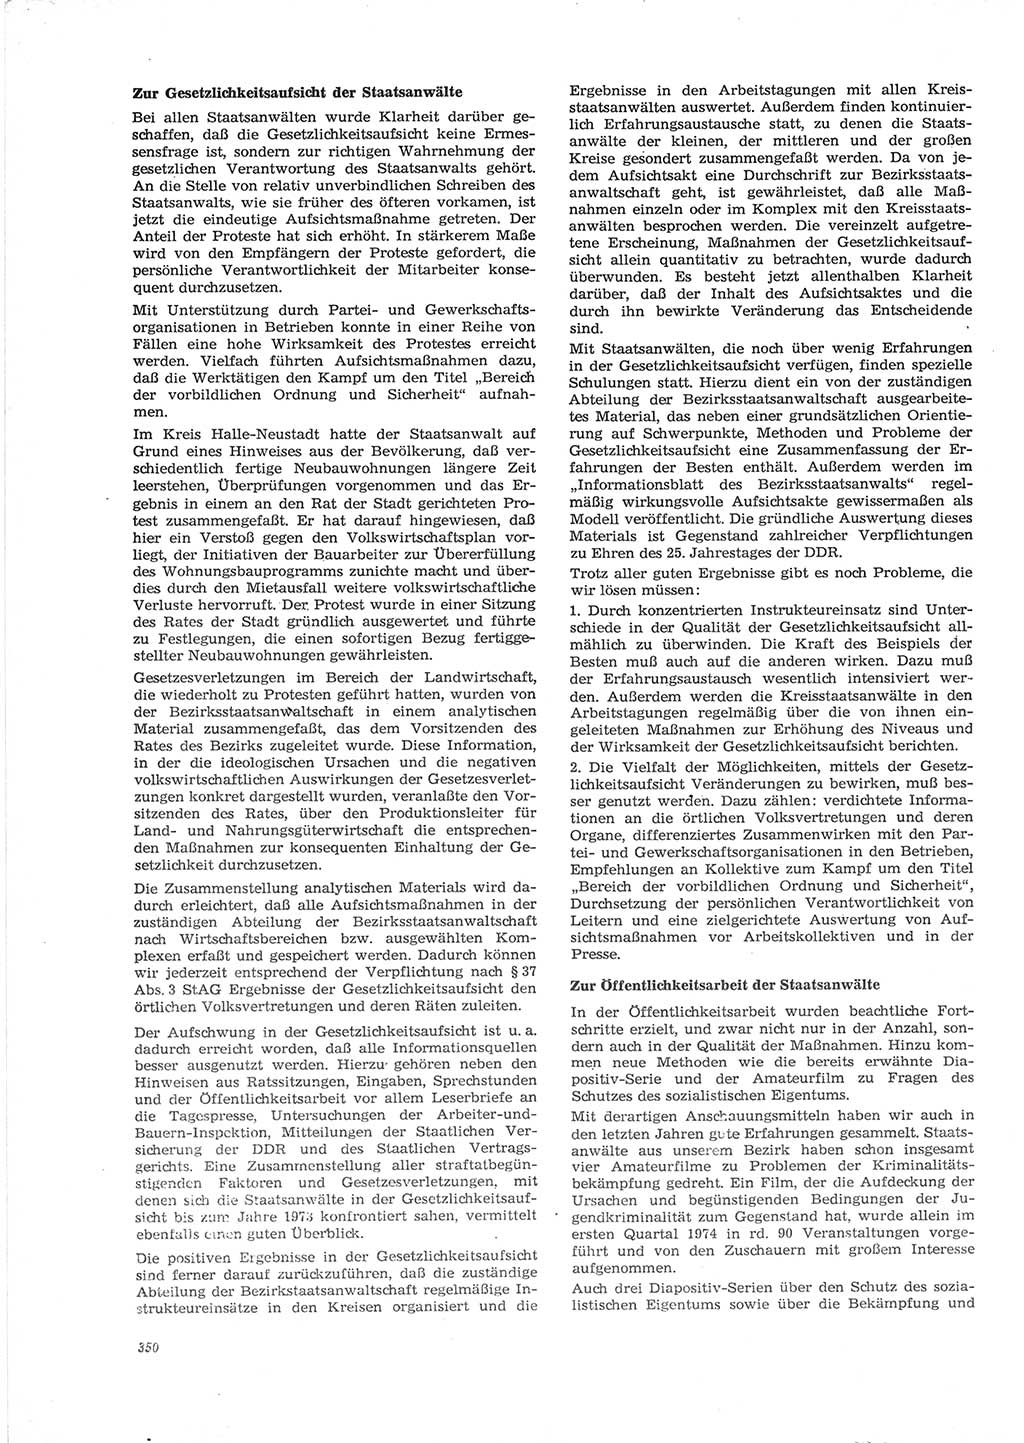 Neue Justiz (NJ), Zeitschrift für Recht und Rechtswissenschaft [Deutsche Demokratische Republik (DDR)], 28. Jahrgang 1974, Seite 350 (NJ DDR 1974, S. 350)